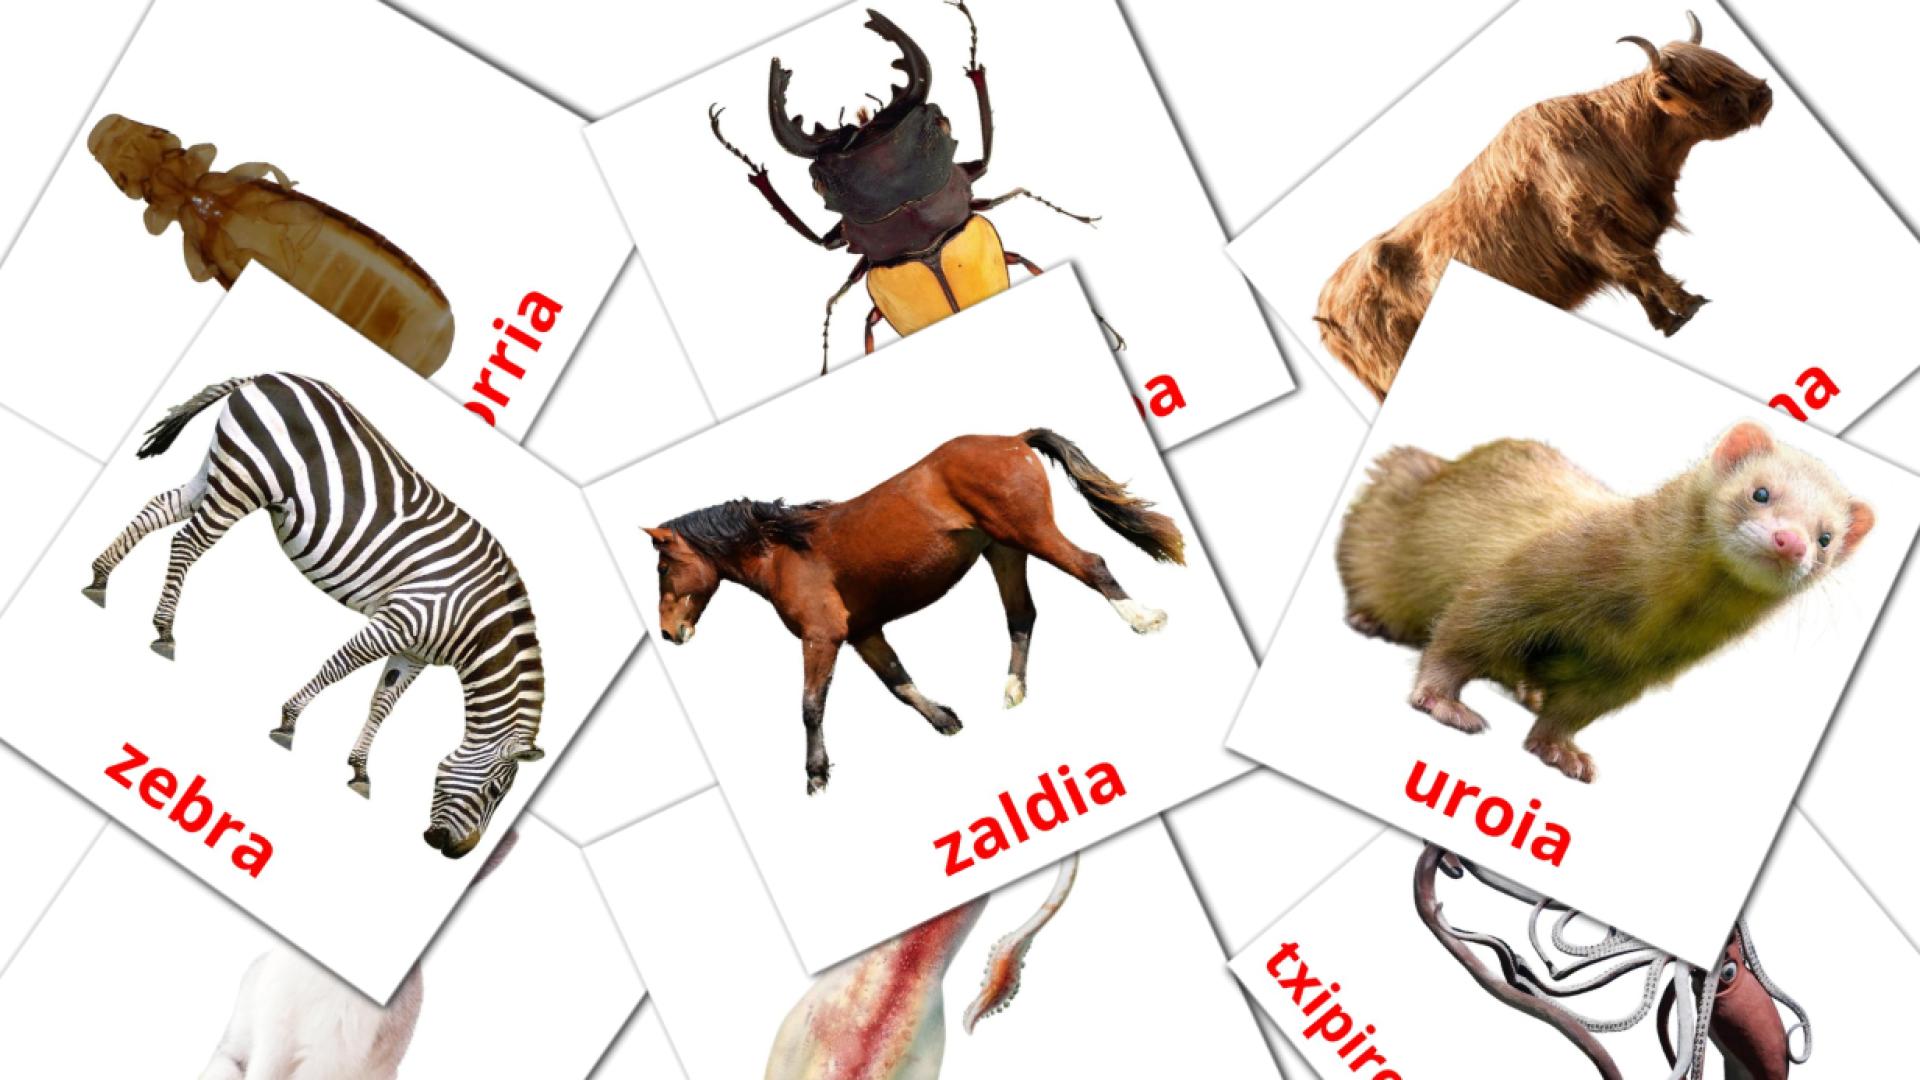 Animaliak basque vocabulary flashcards